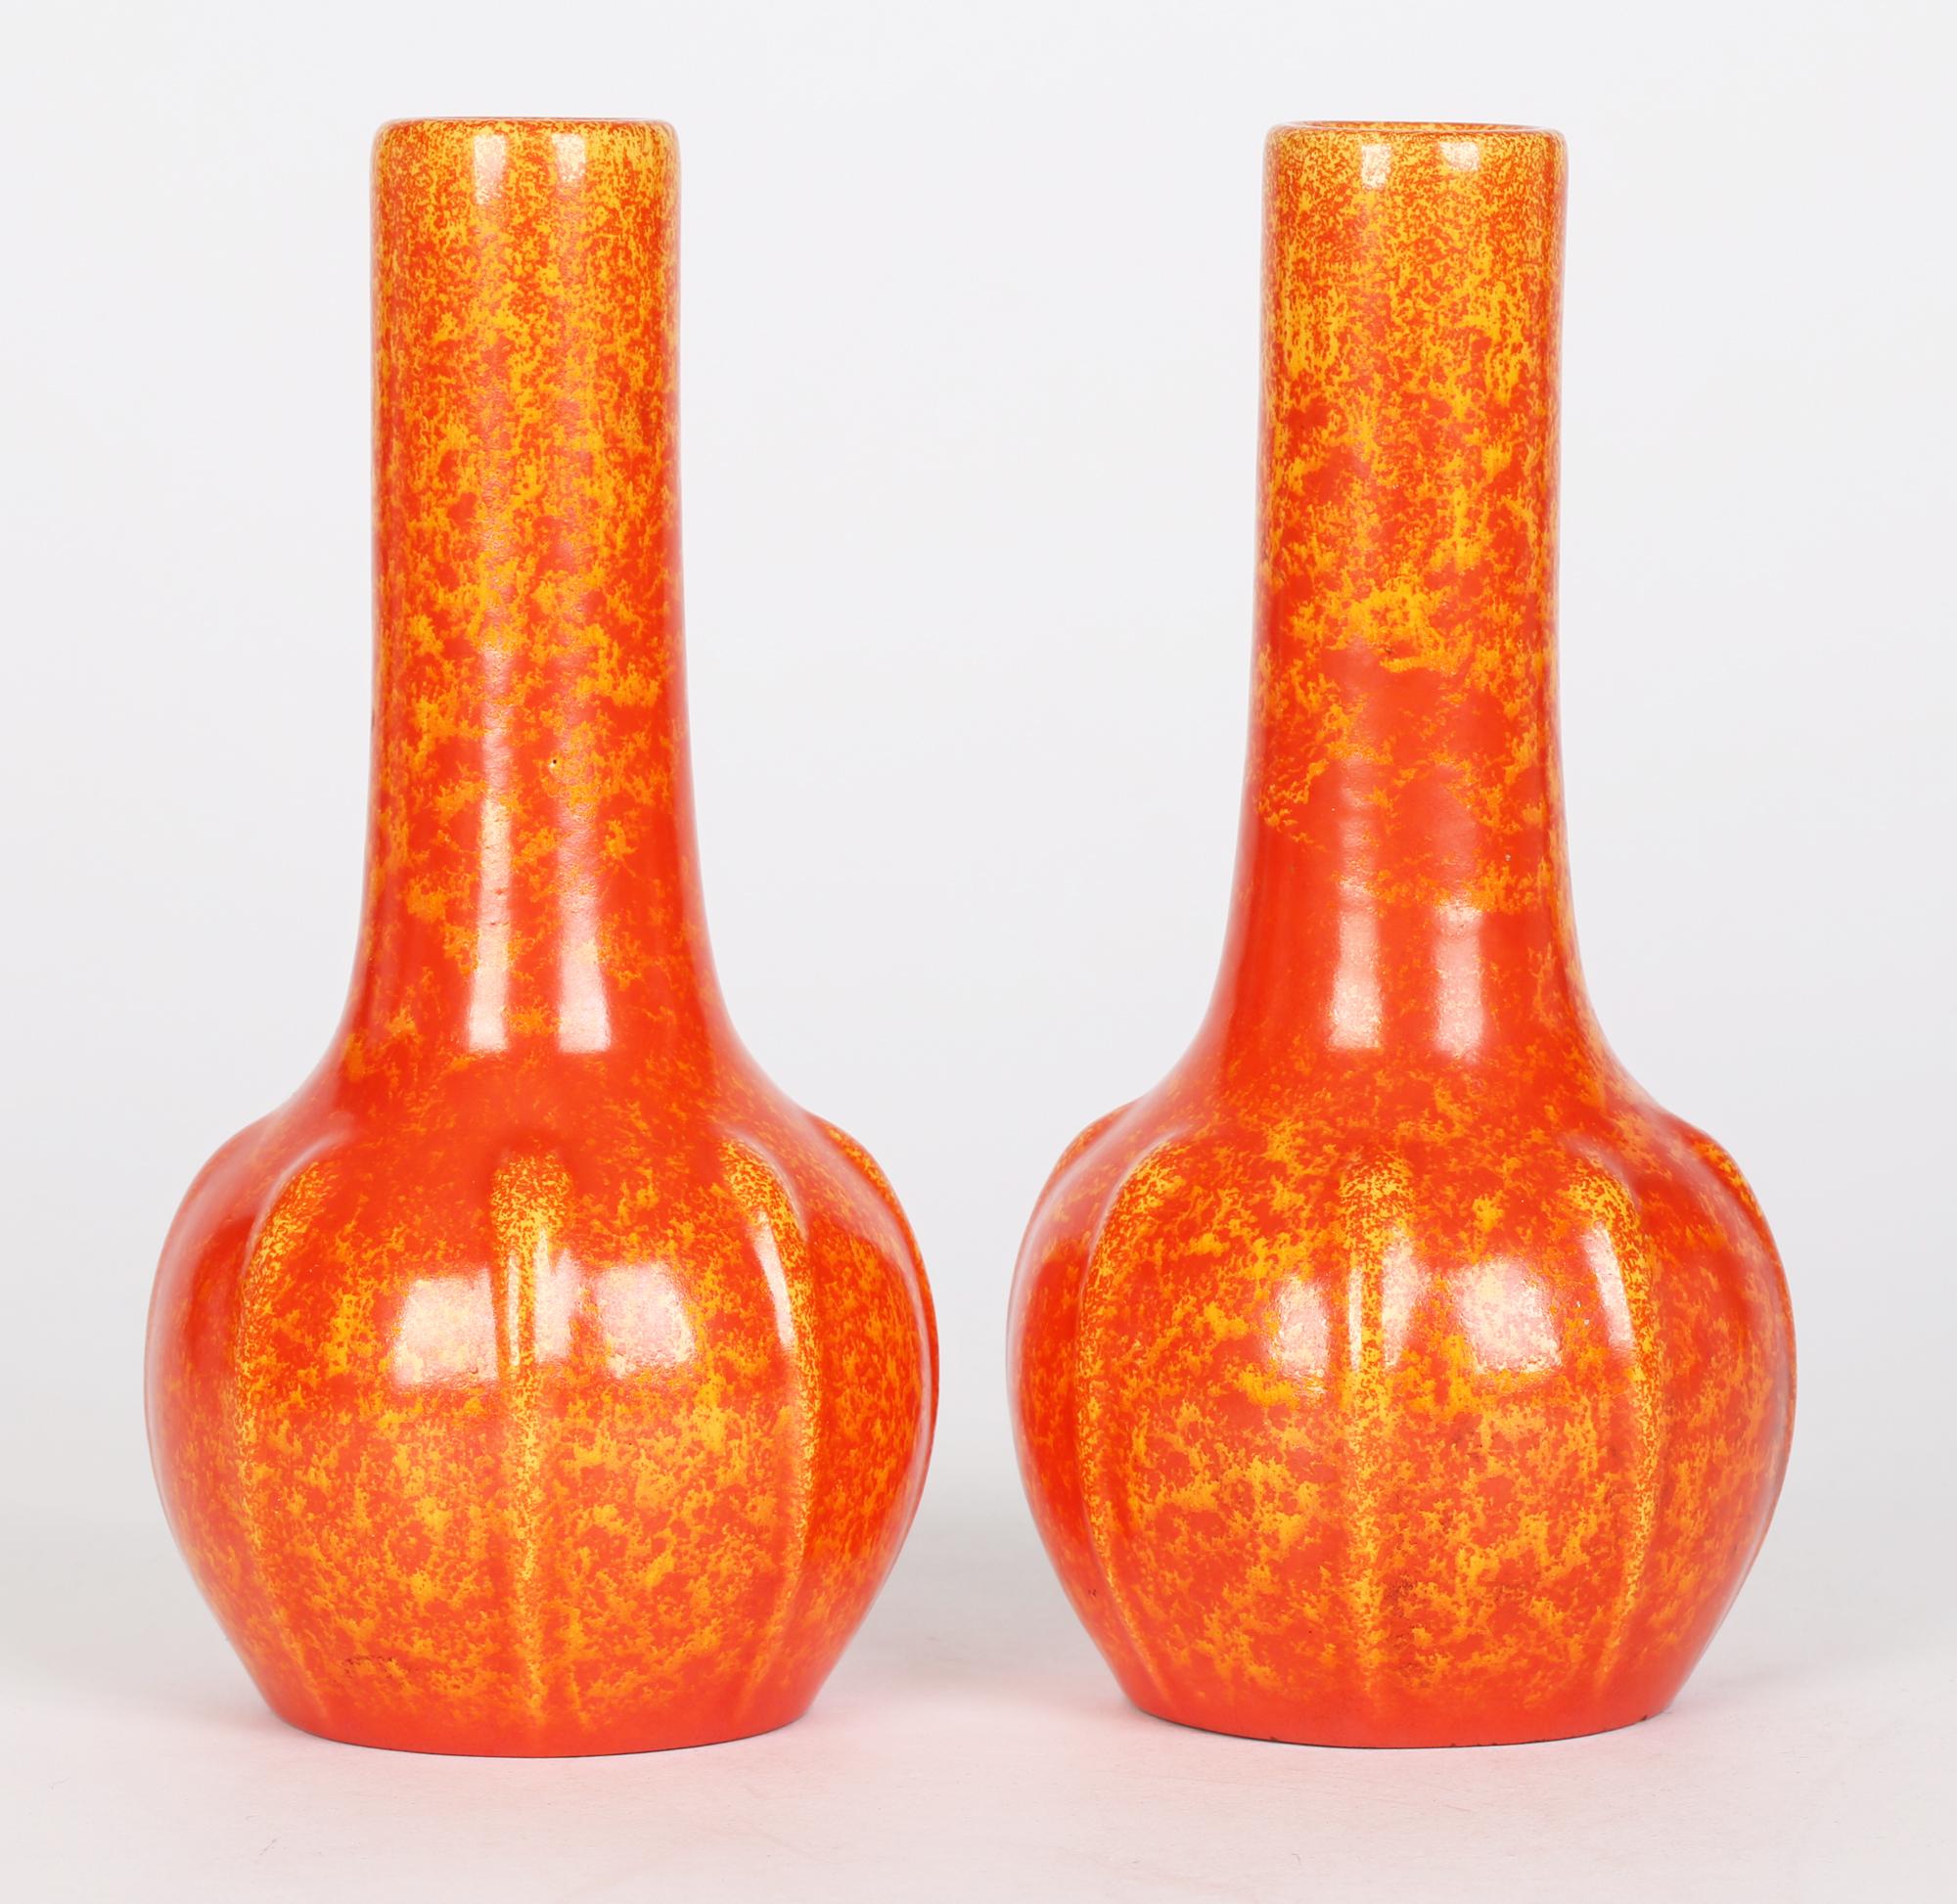 Pilkington Pair Art Deco Orange Vermilion Glazed Art Pottery Vases 8